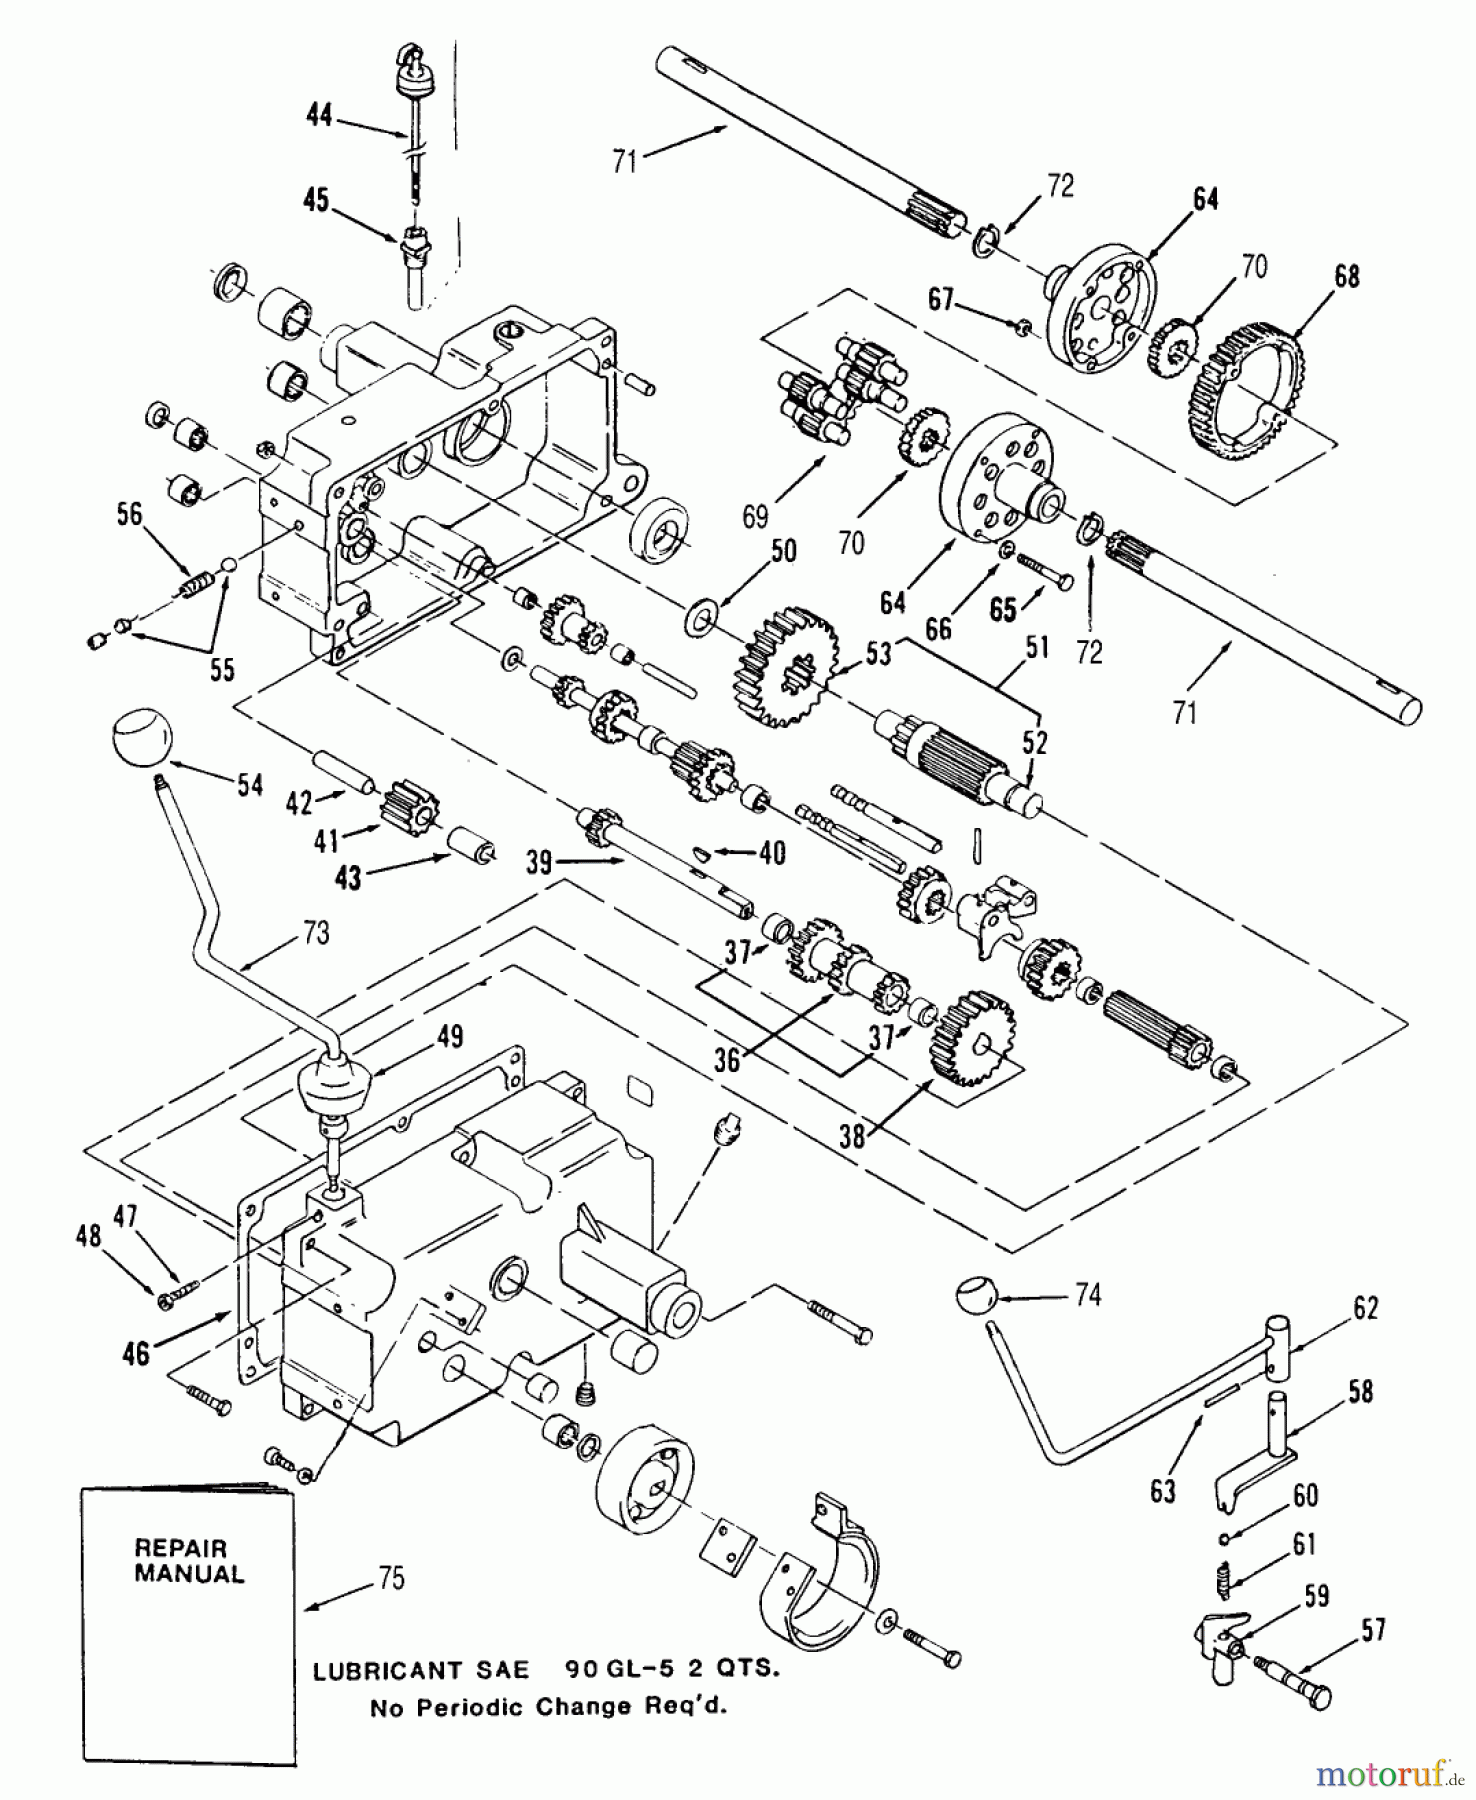  Toro Neu Mowers, Lawn & Garden Tractor Seite 2 R1-12K802 (312-8) - Toro 312-8 Garden Tractor, 1990 MECHANICAL TRANSMISSION-8-SPEED #2